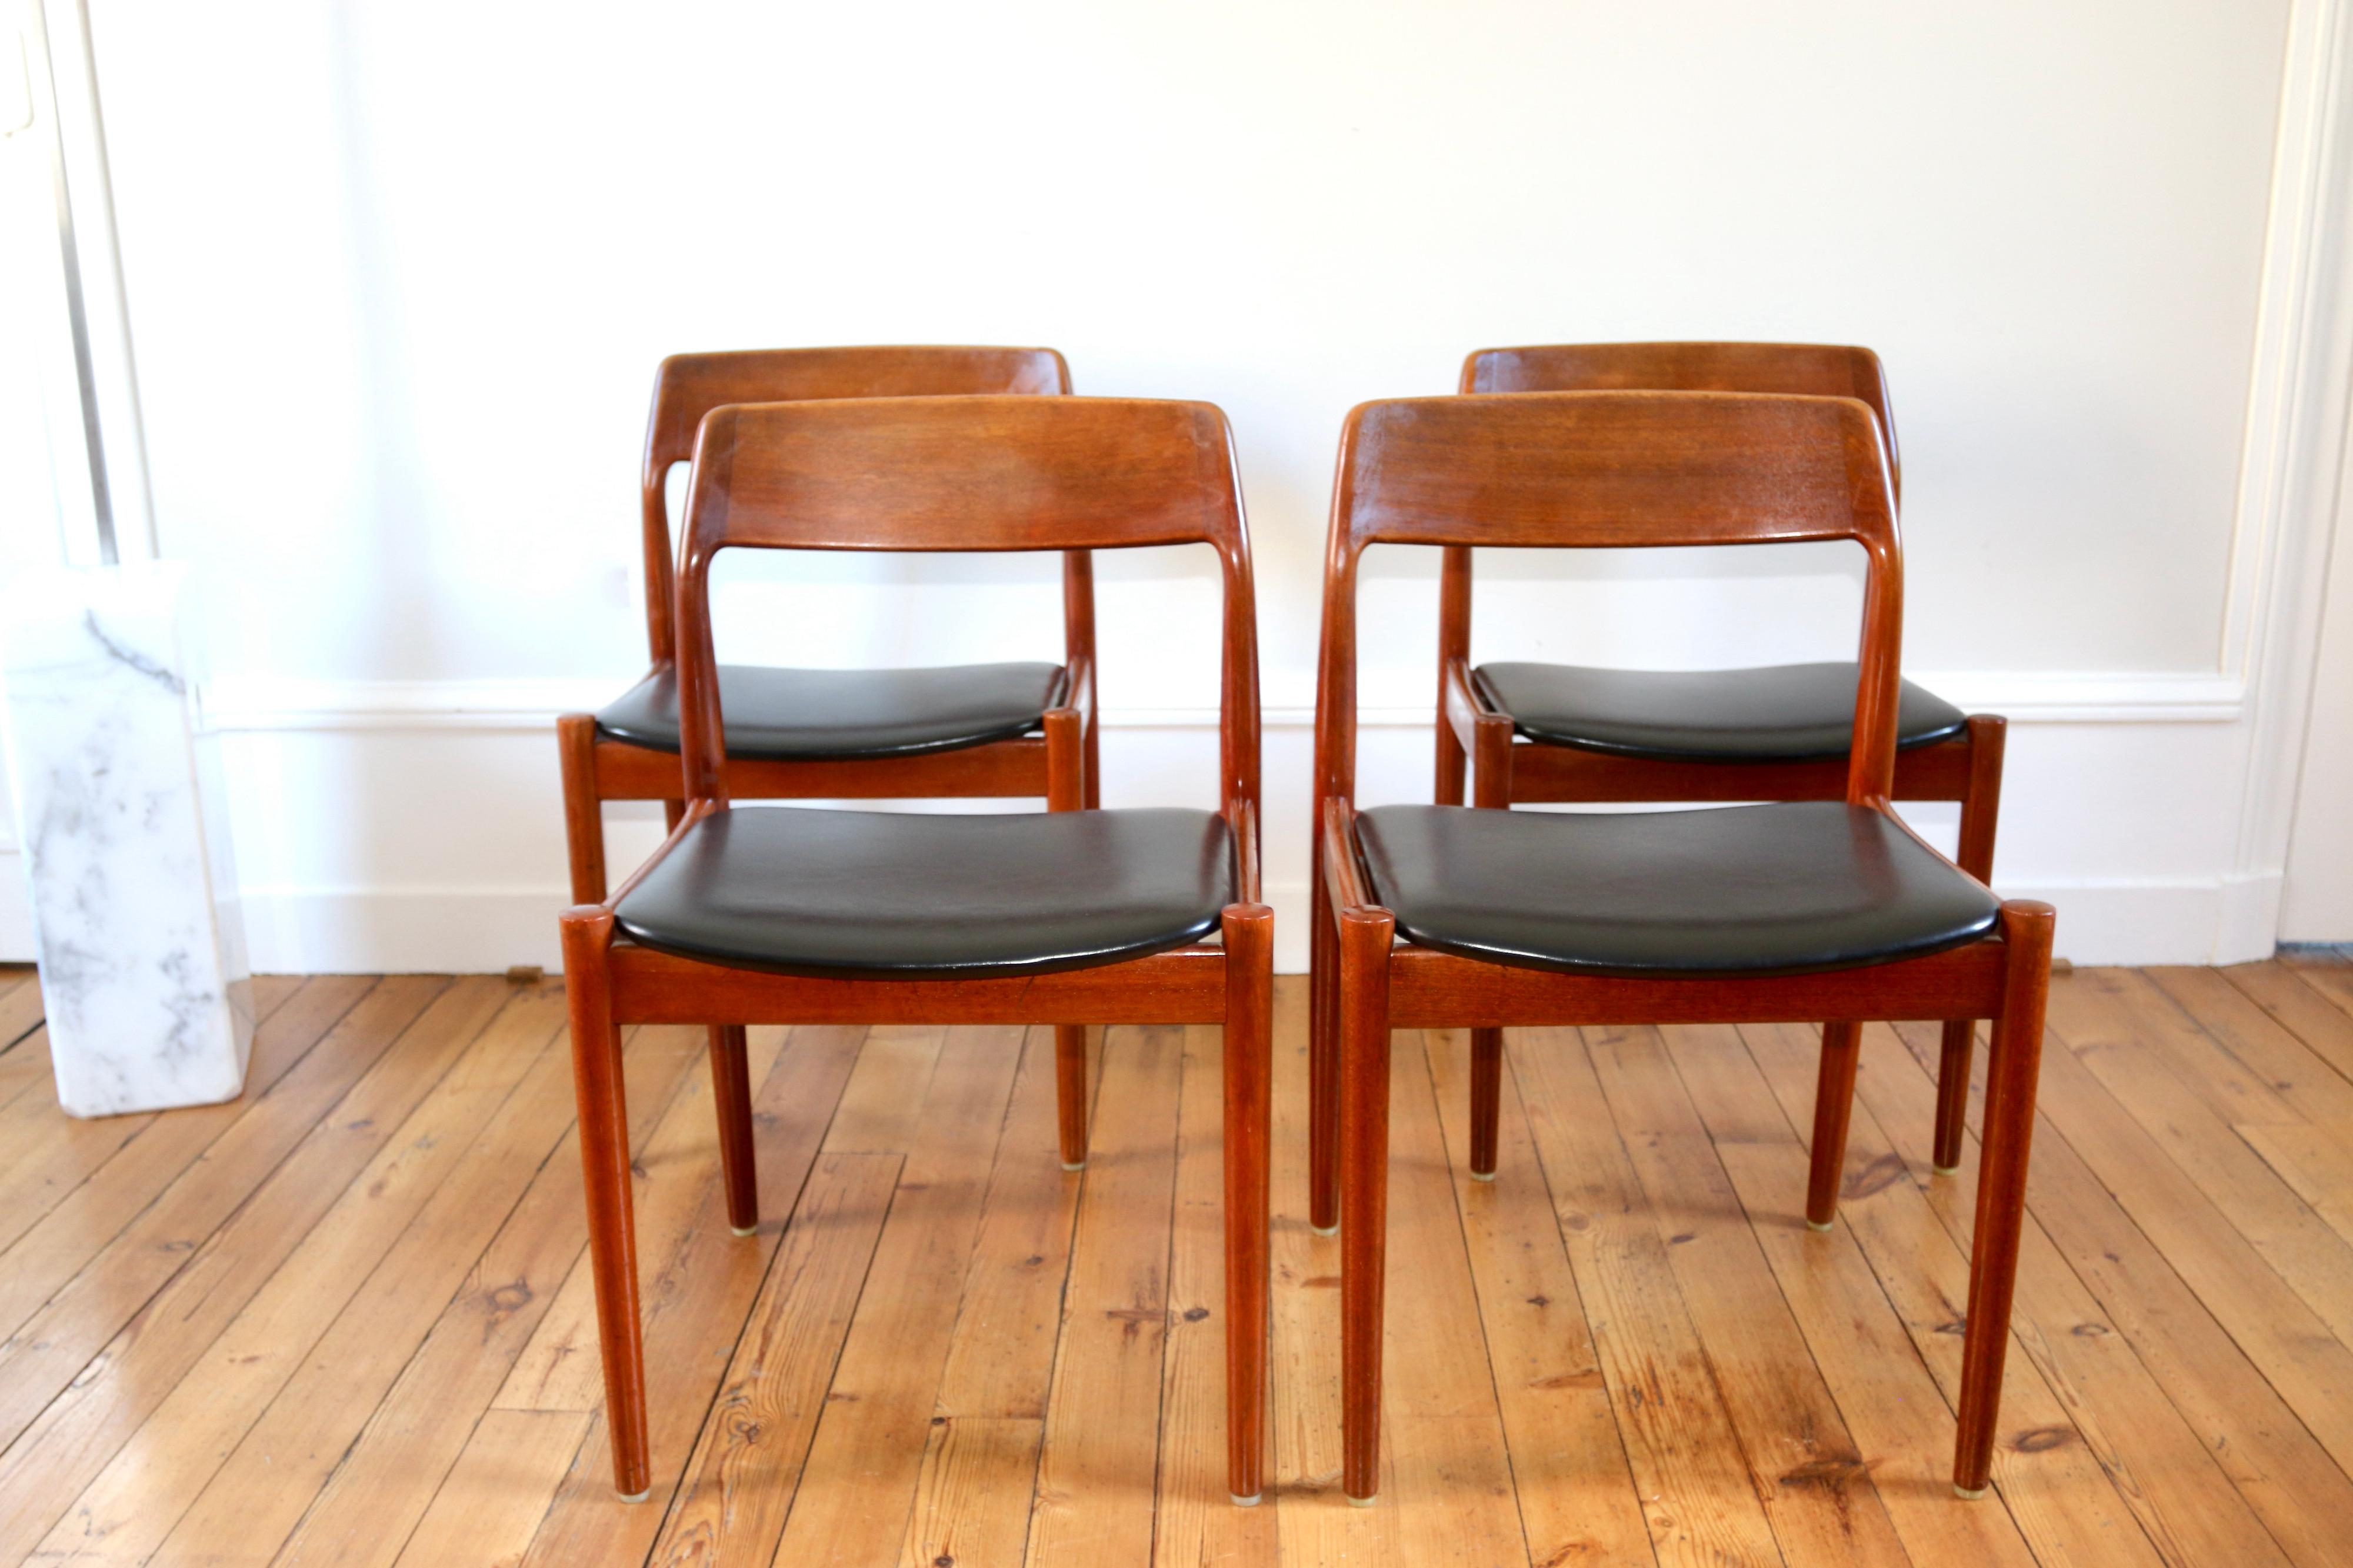 Série de 4 chaises danoises en teck éditées par Scanti Mobelvaerk, distribuées par Roche Bobois dans les années 60

en bon état, seuls à noter quelques signes du temps

dimensions : hauteur 77 cm X hauteur d'assise 44 cm x largeur 49 cm x profondeur